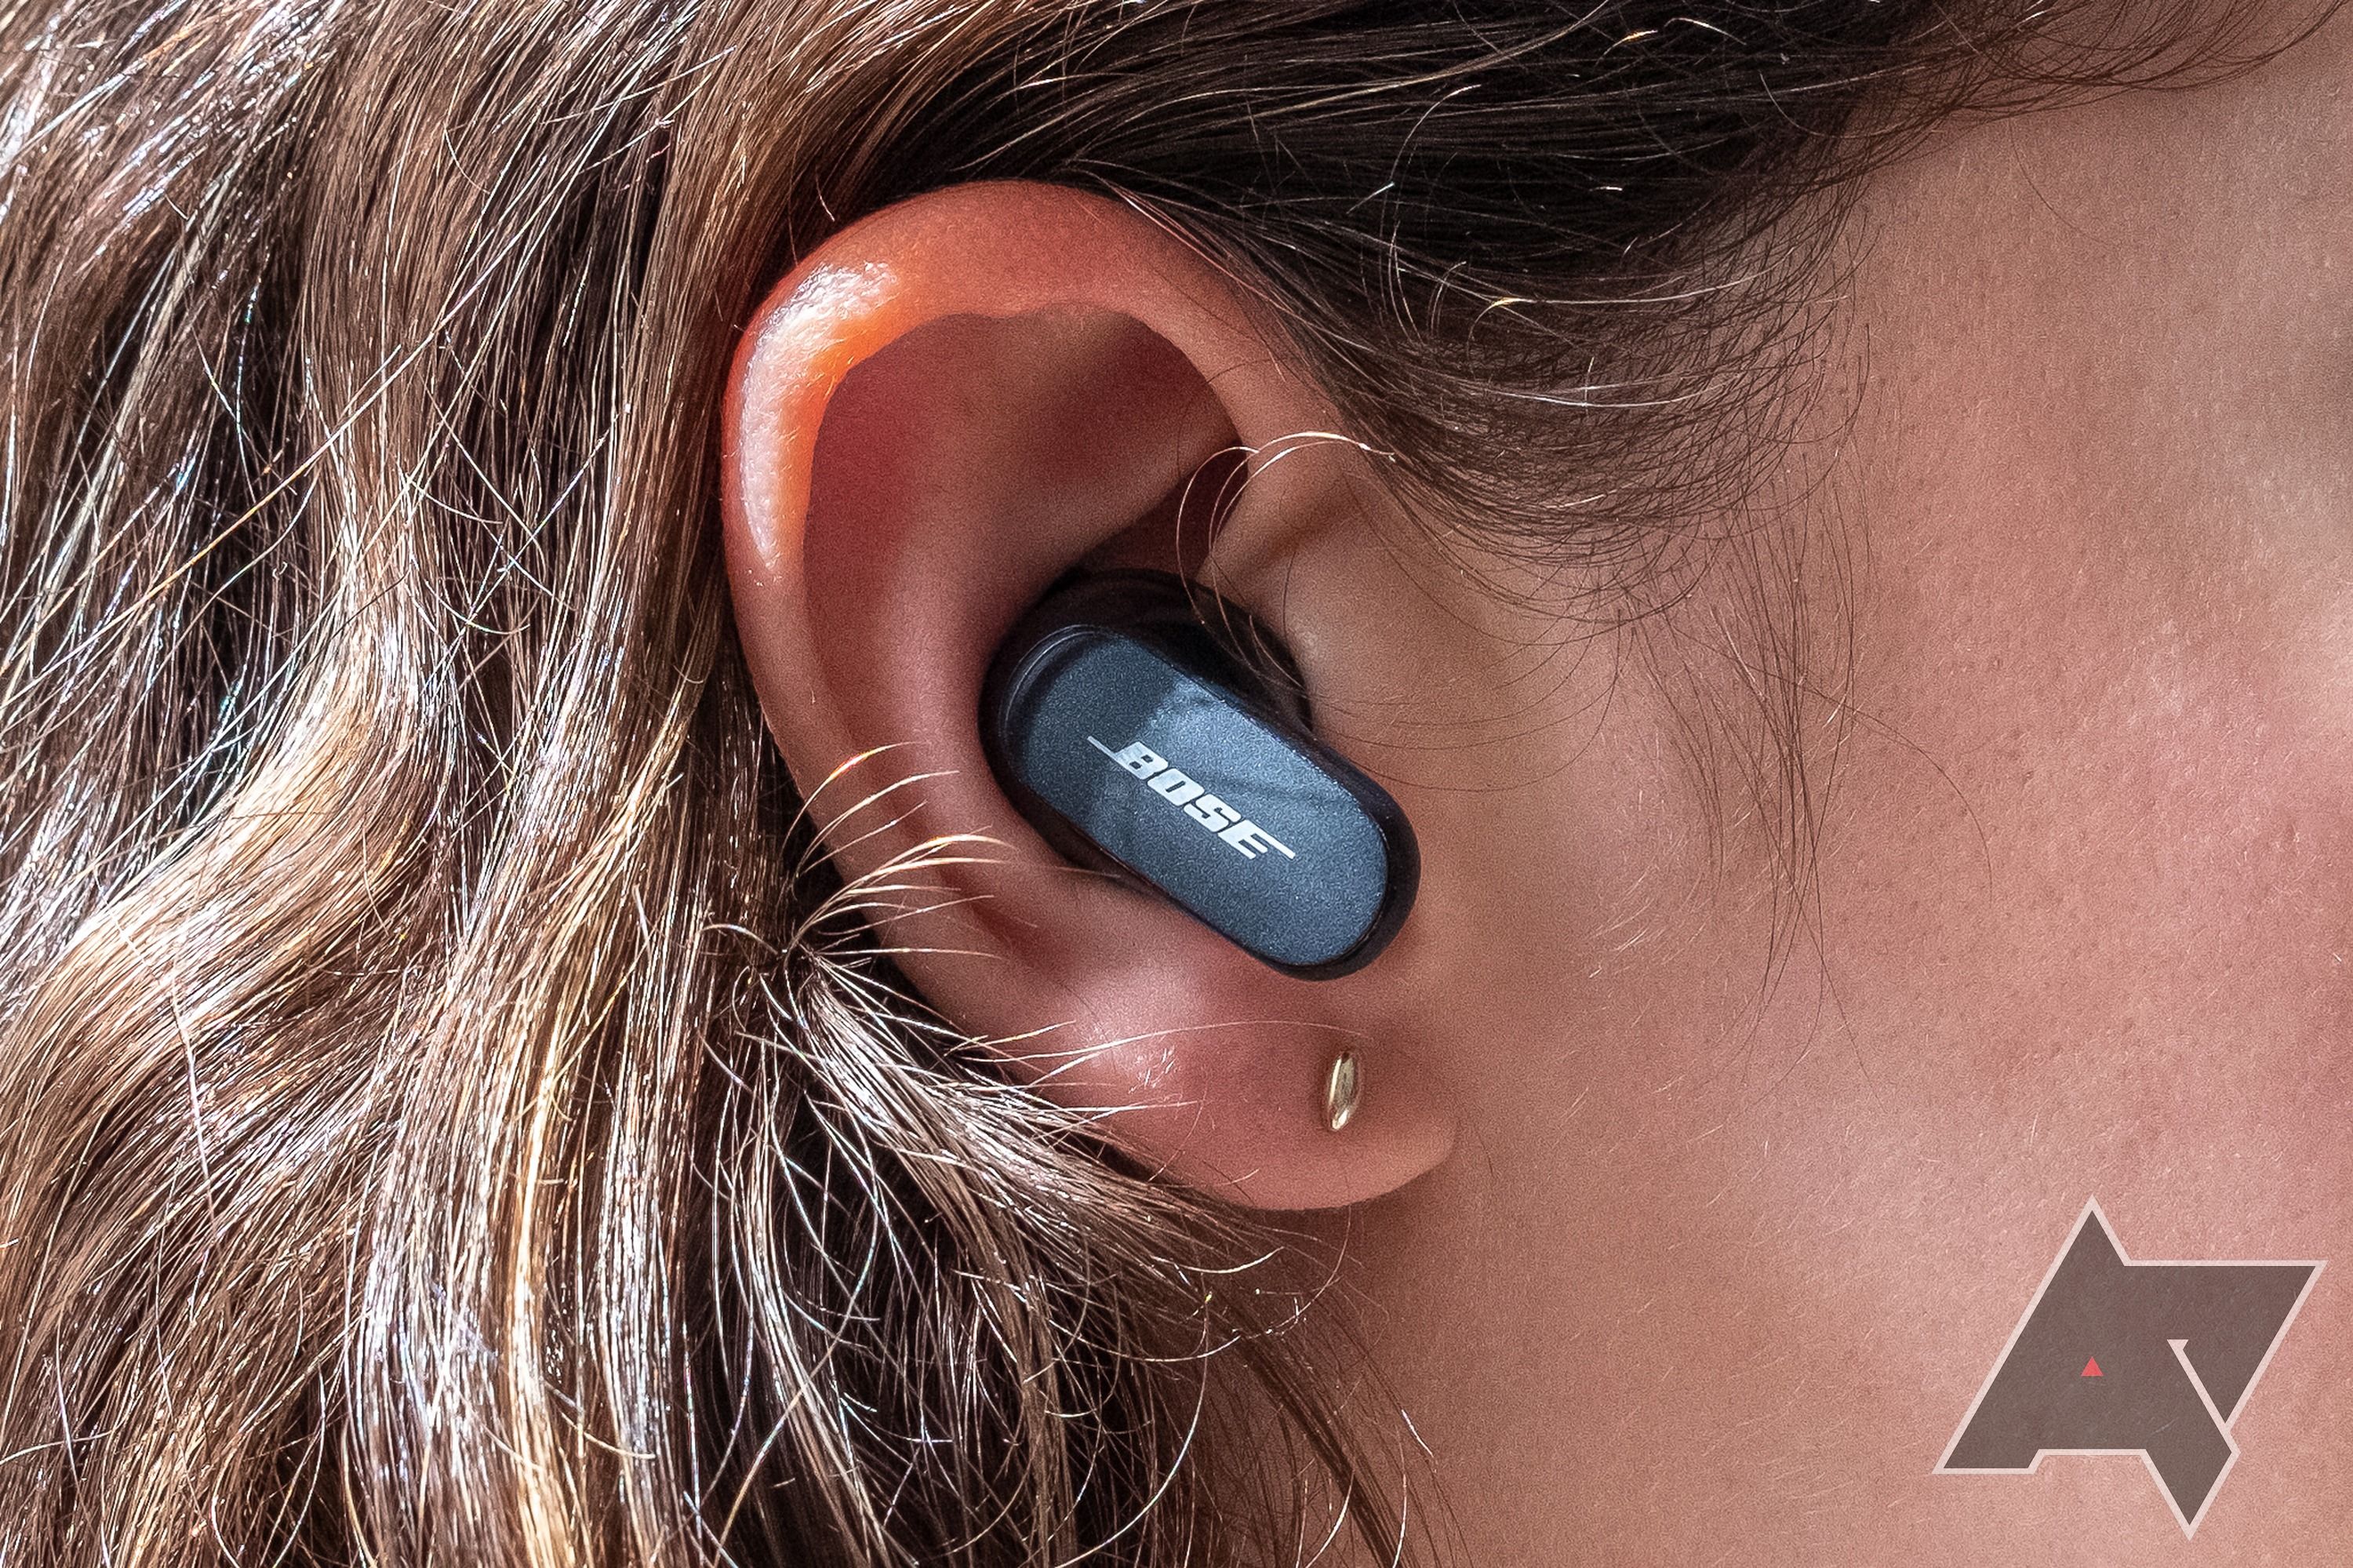 Bose QuietComfort Earbuds II earbud in an ear.